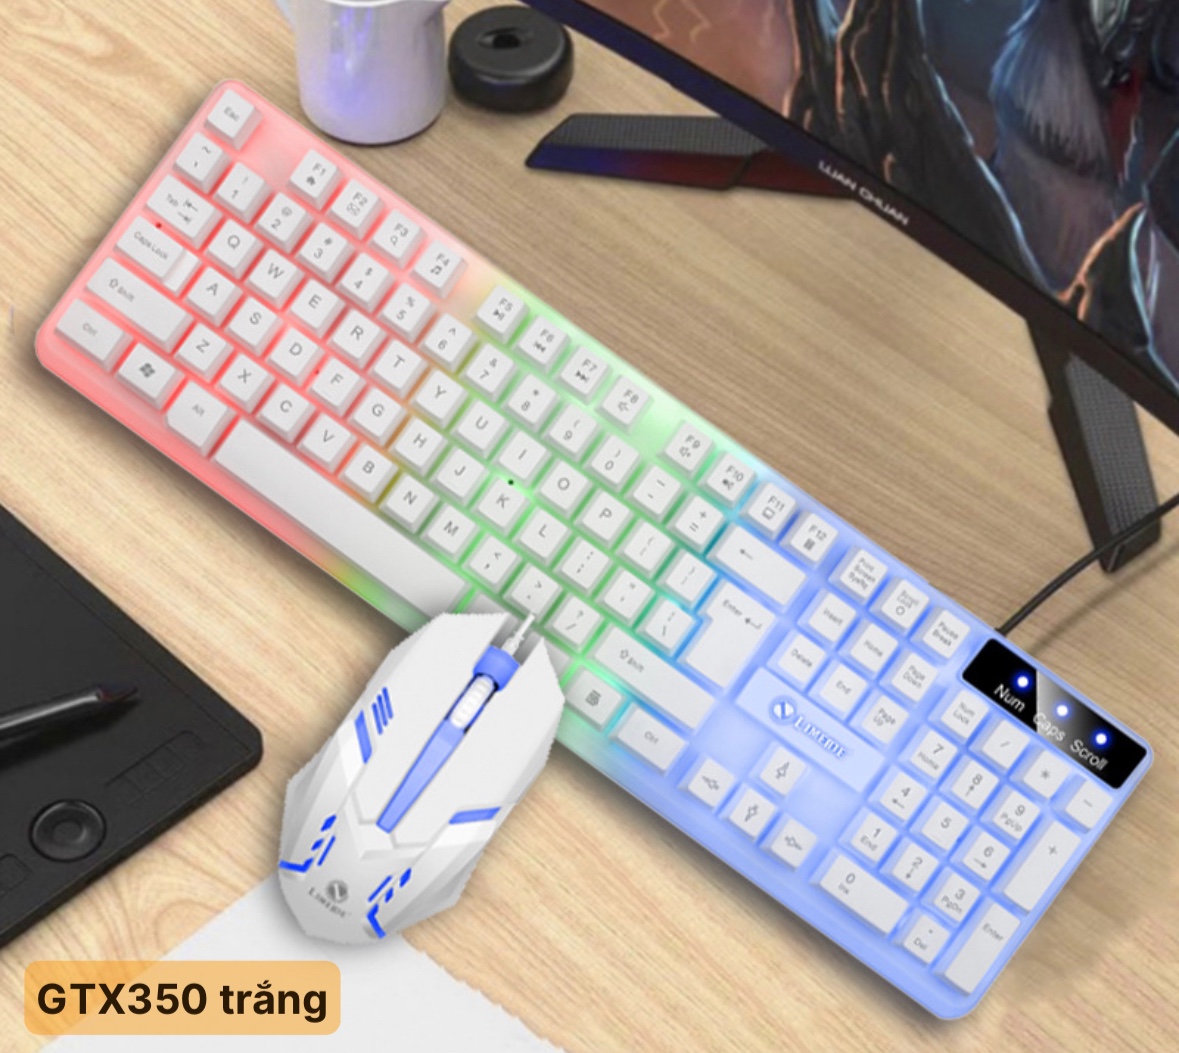 Combo bàn phím và chuột gỉa cơ LIMEIDE GTX 350 màu (TRẮNG/ ĐEN),có đèn led 7 màu cực đẹp